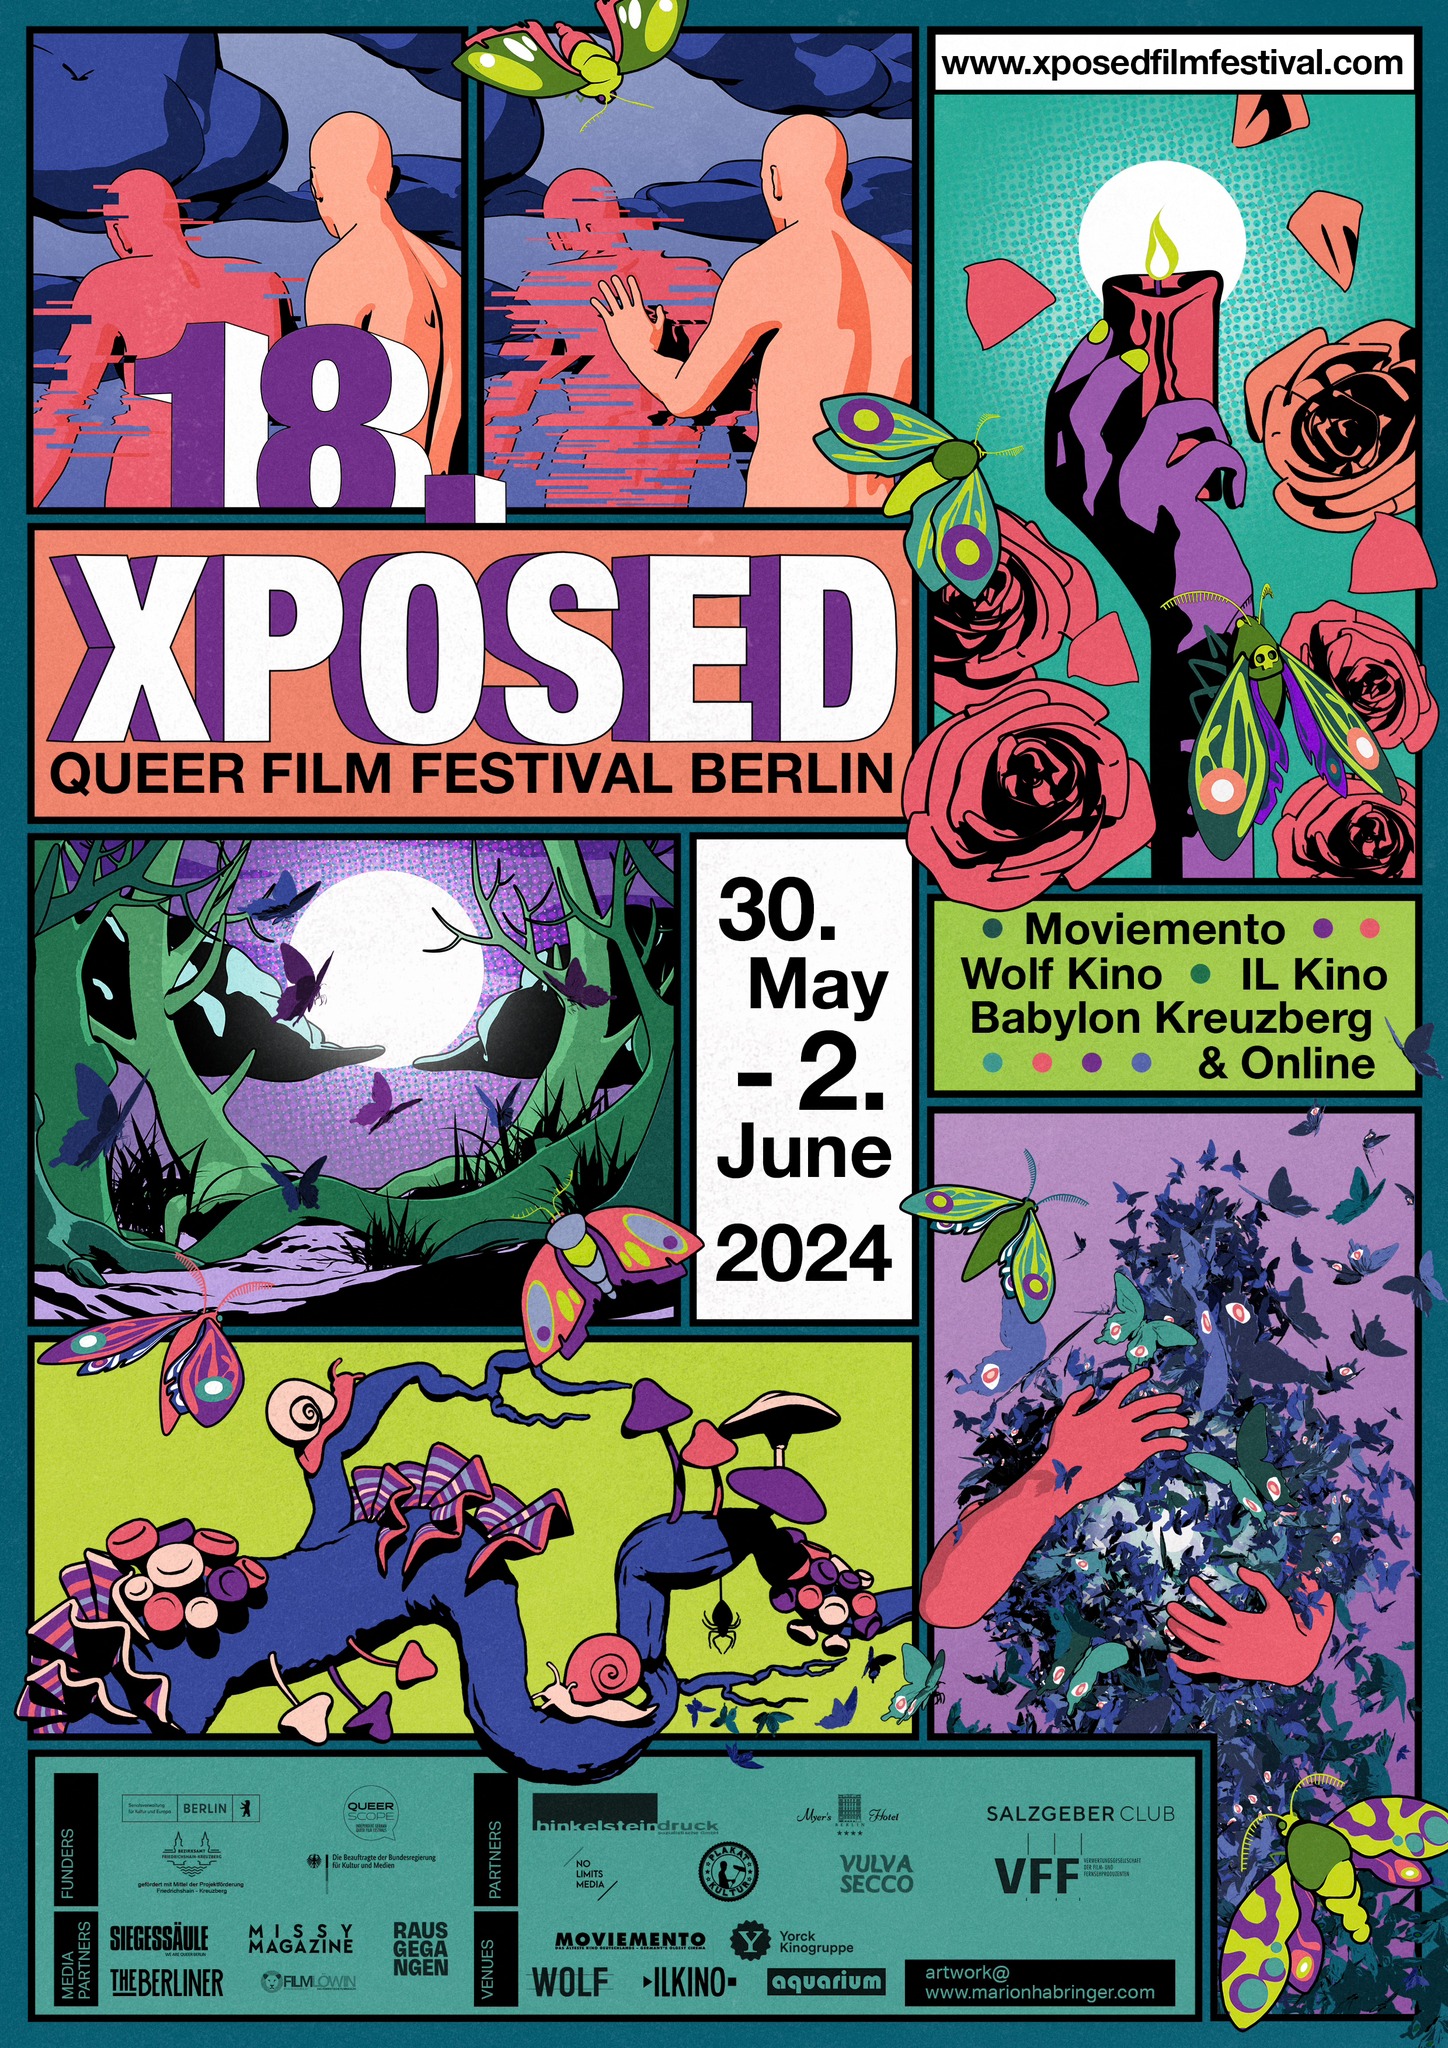 XPOSED Queer Film Festival